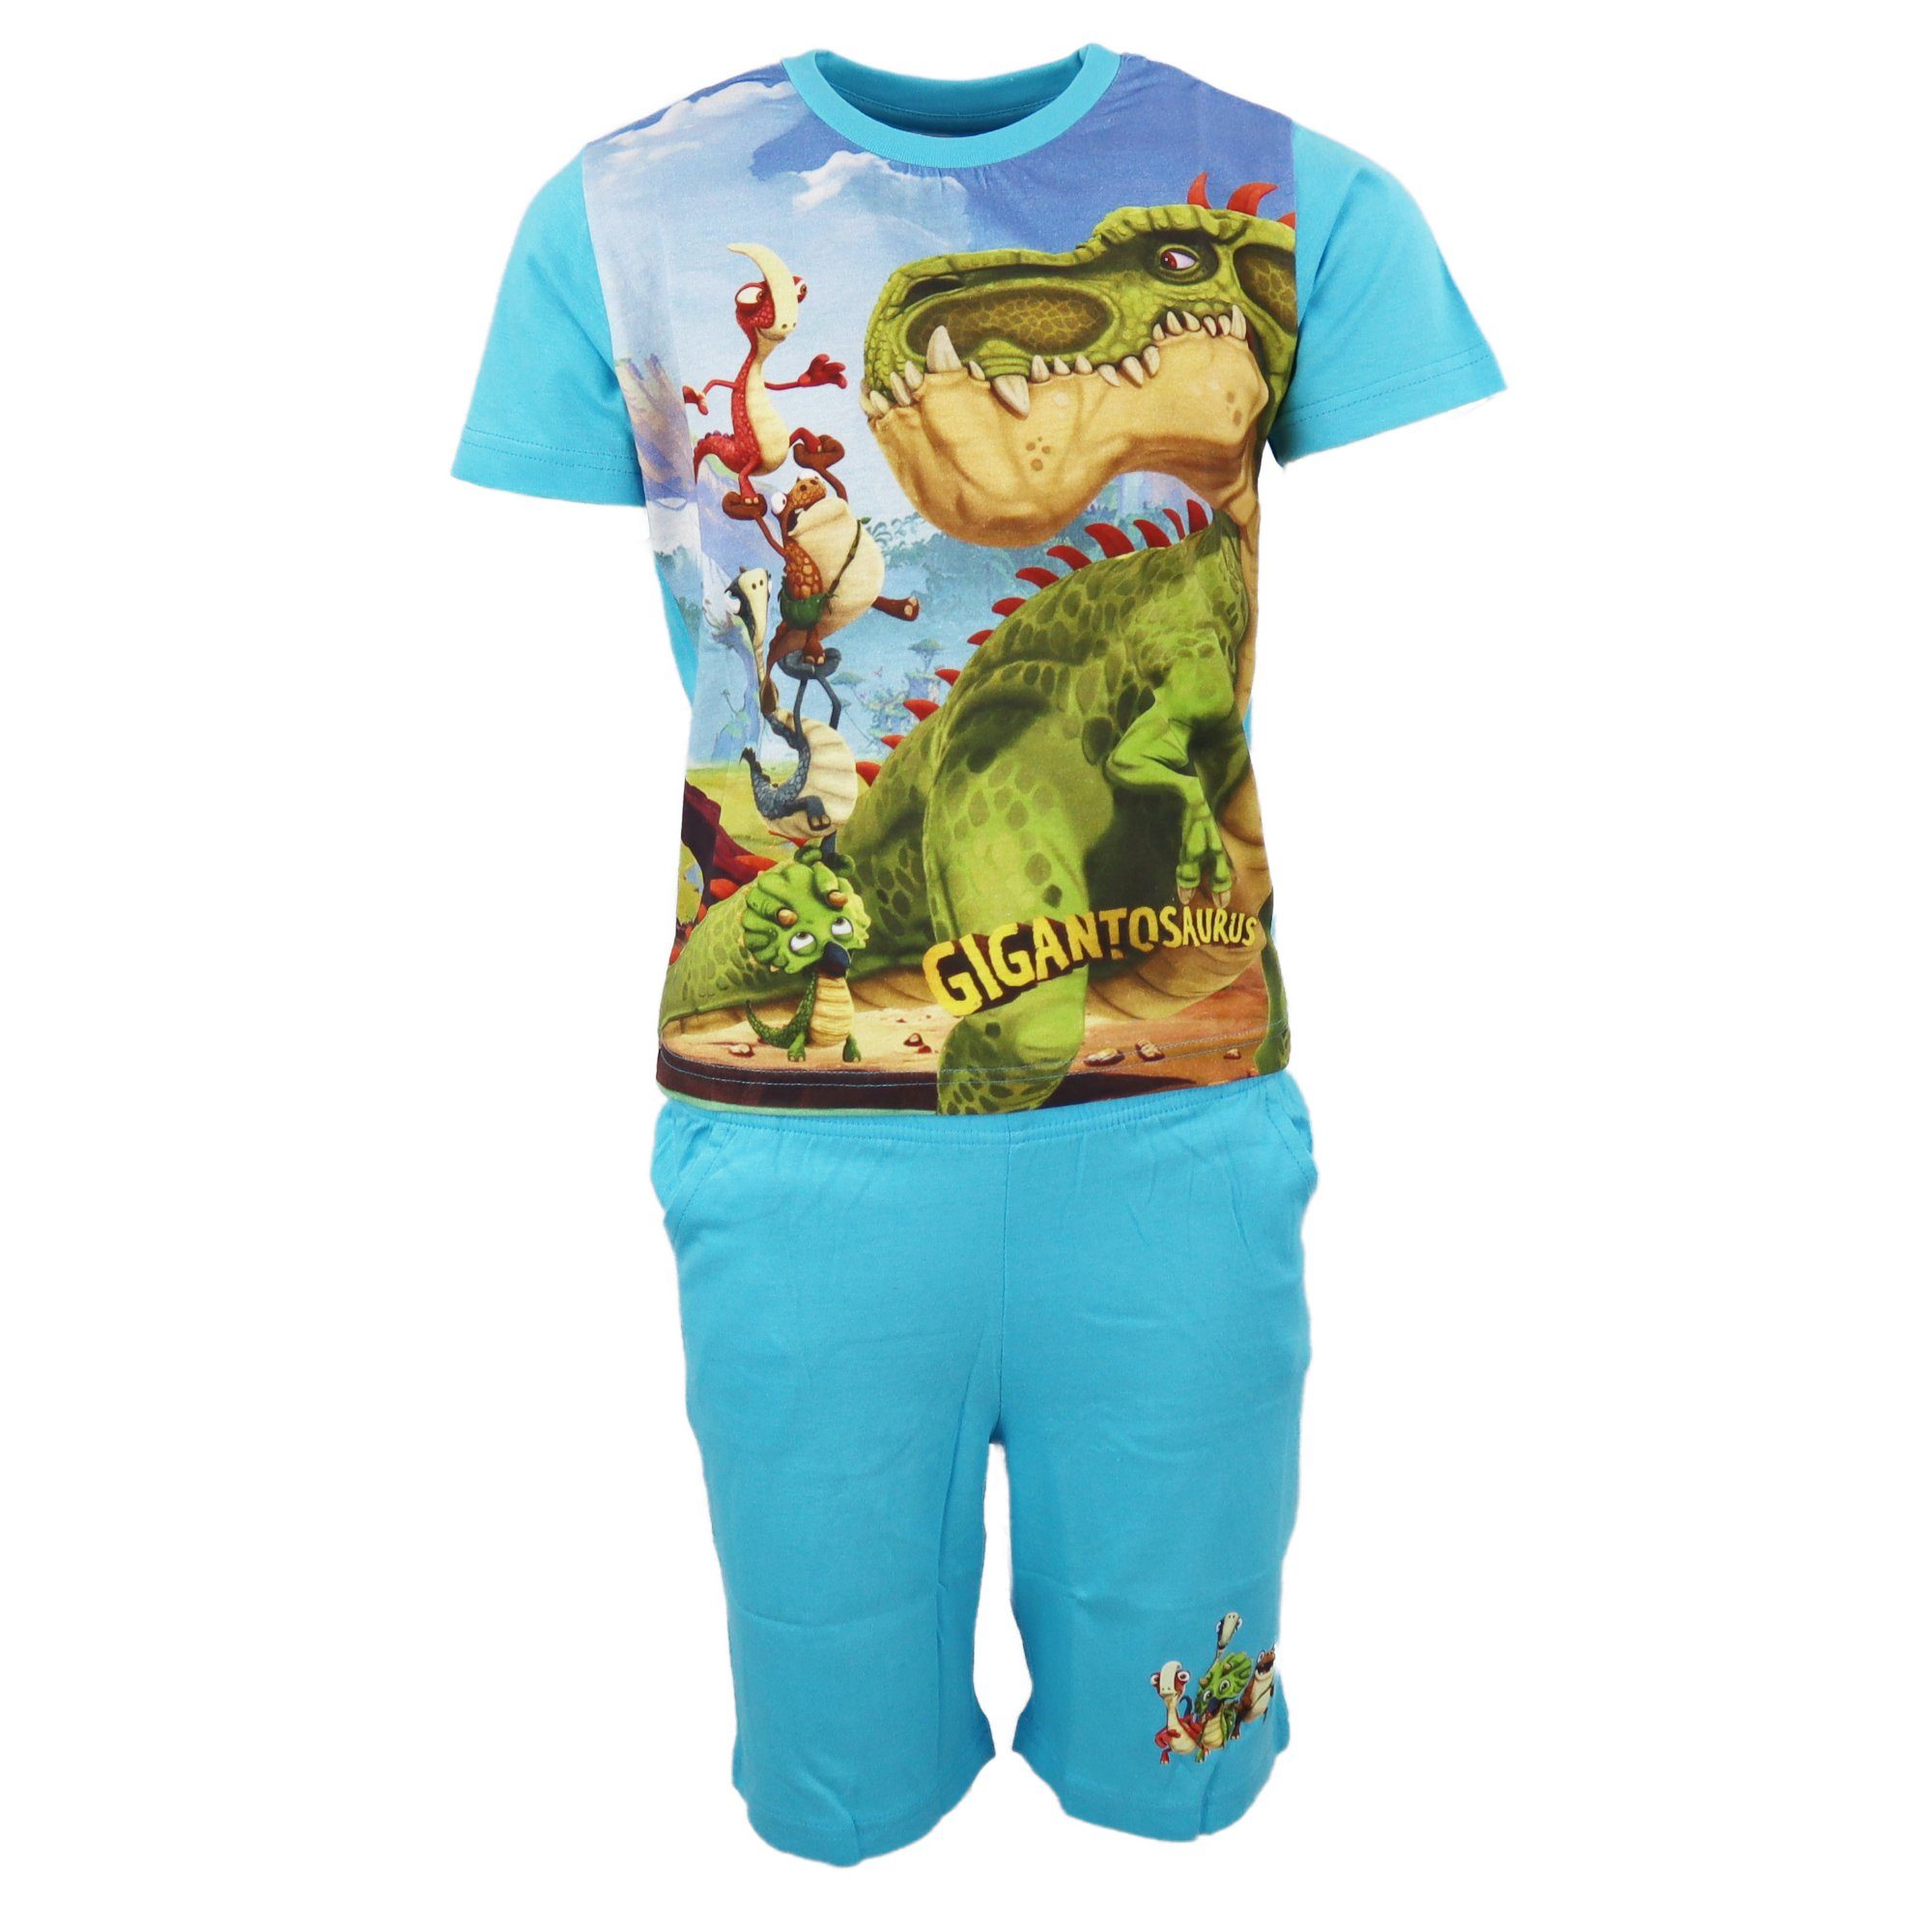 Cyber Group Studios Schlafanzug Gigantosaurus Kinder Jungen Pyjama Gr. 98 bis 128 - 100% Baumwolle Hellblau